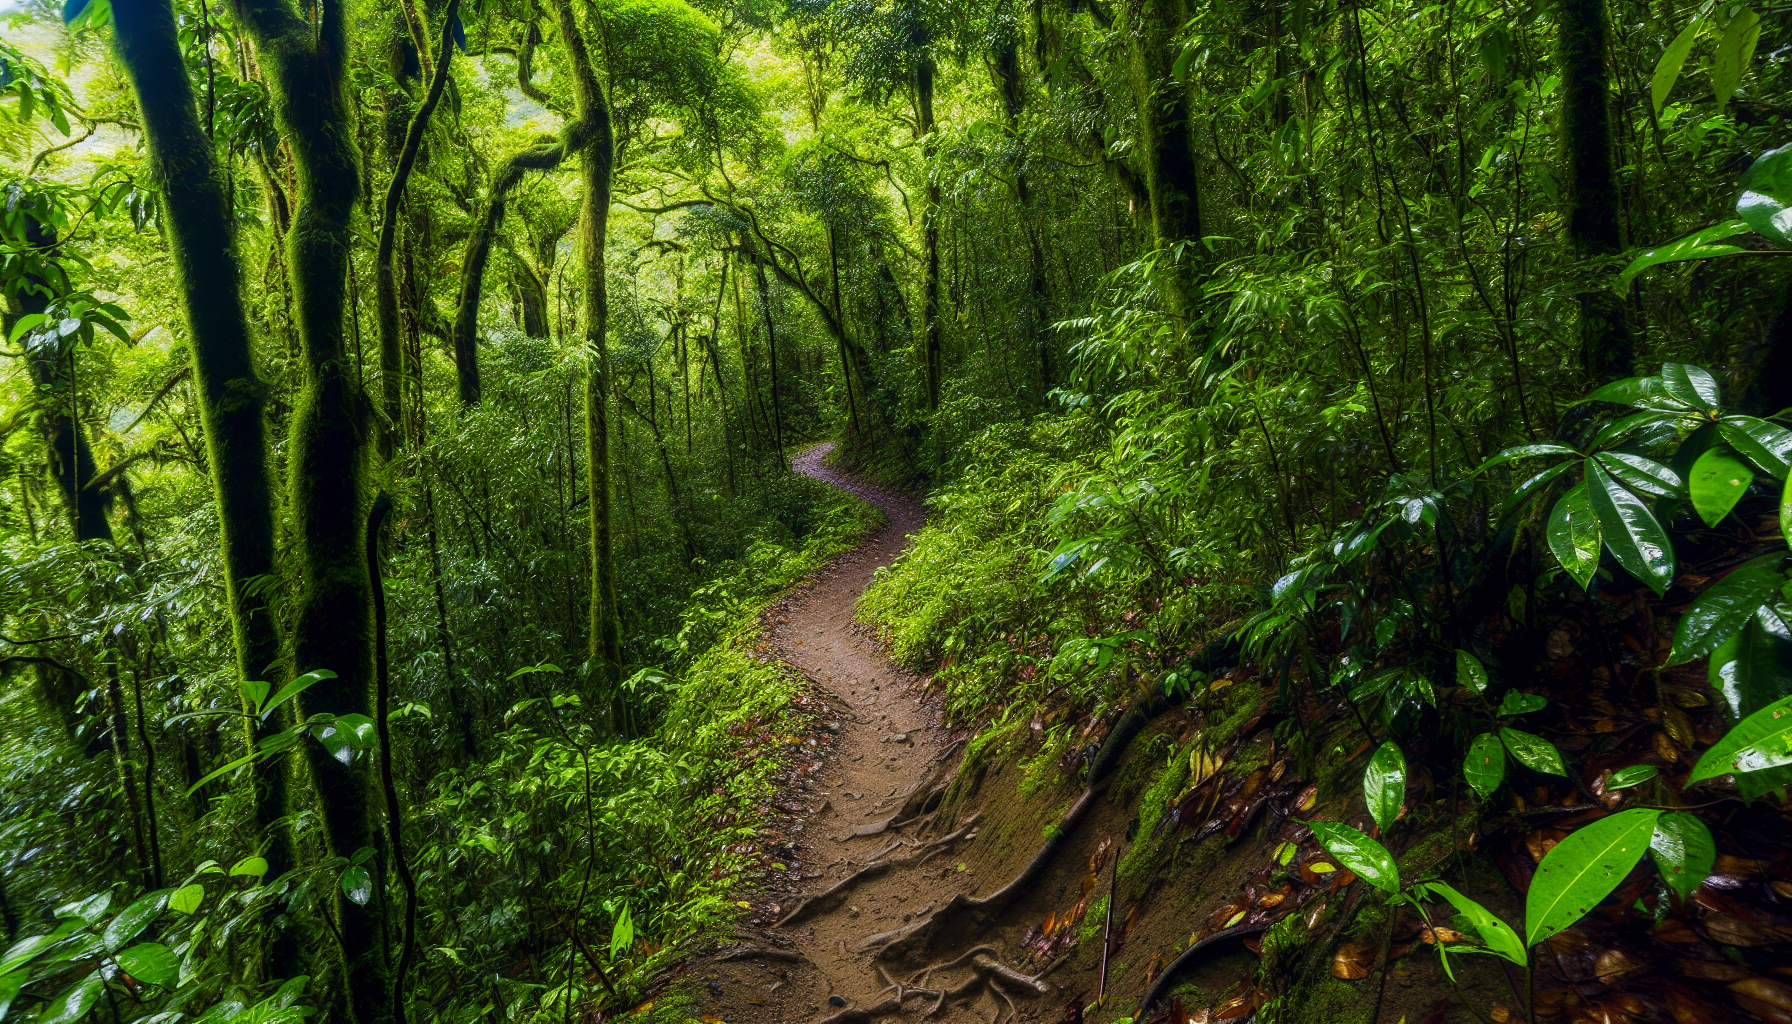 Hiking trail through lush rainforest in Costa Rica during rainy season